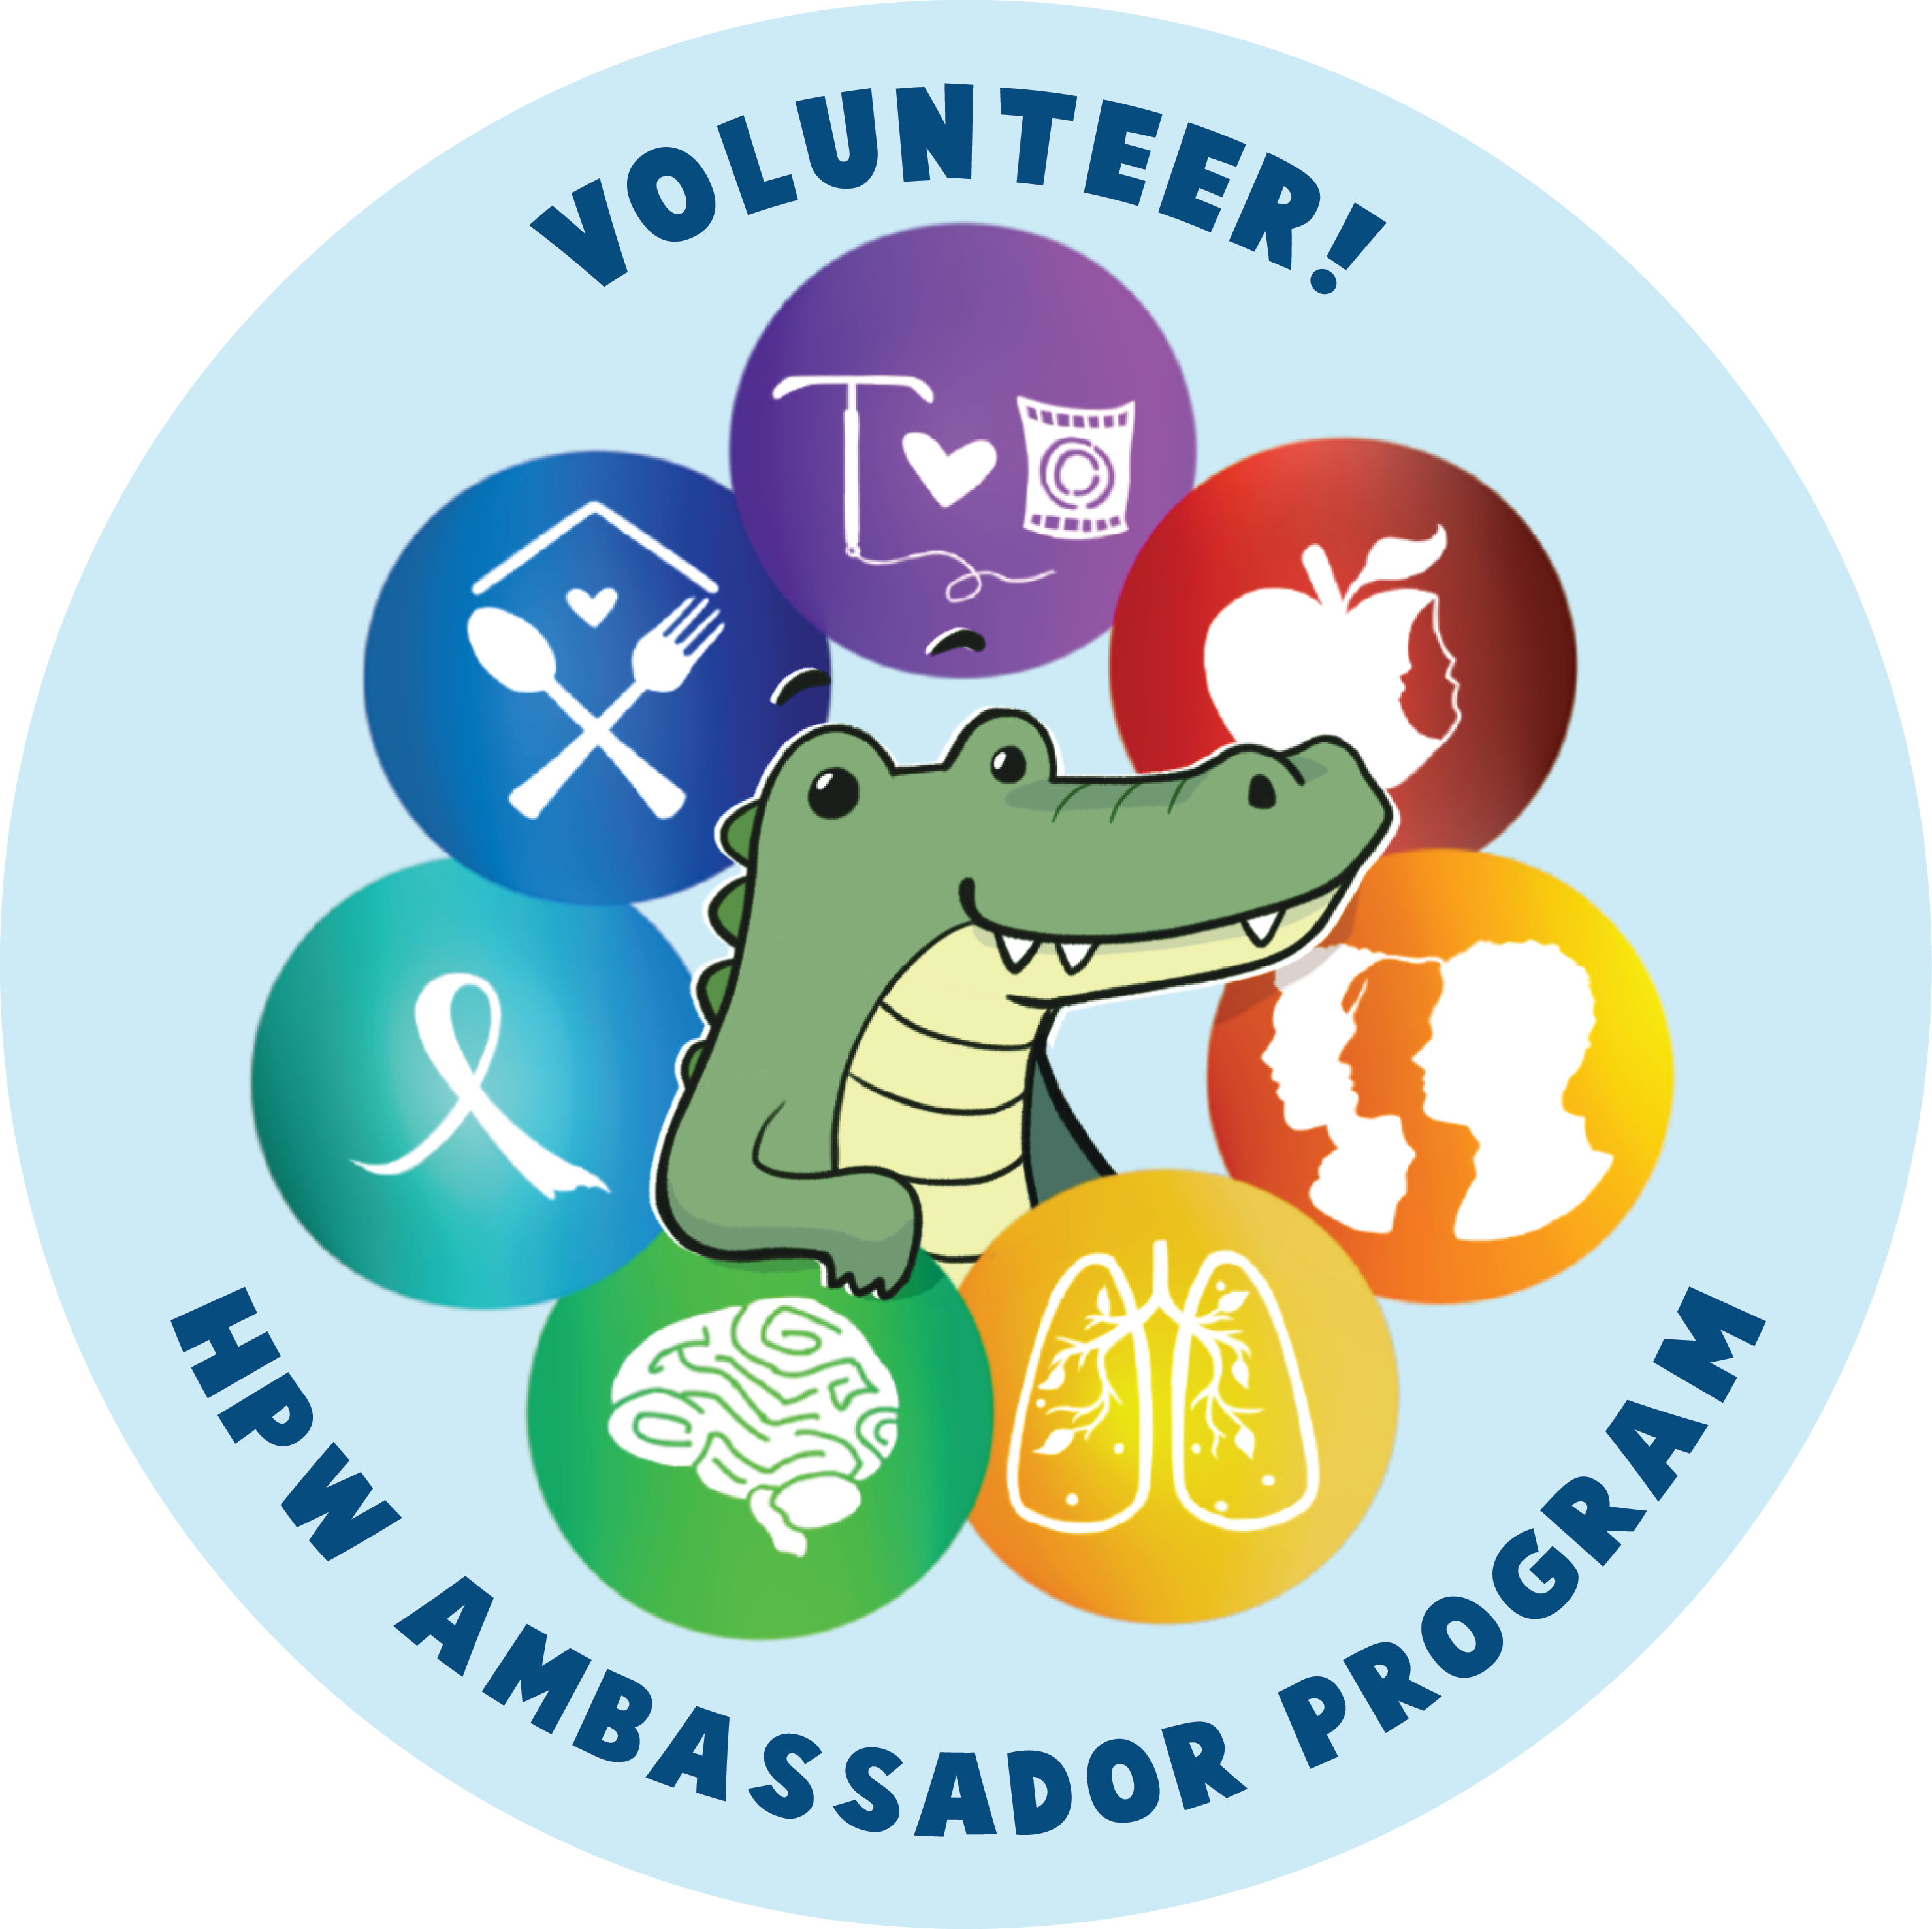 Volunteer! HPW Ambassador Program